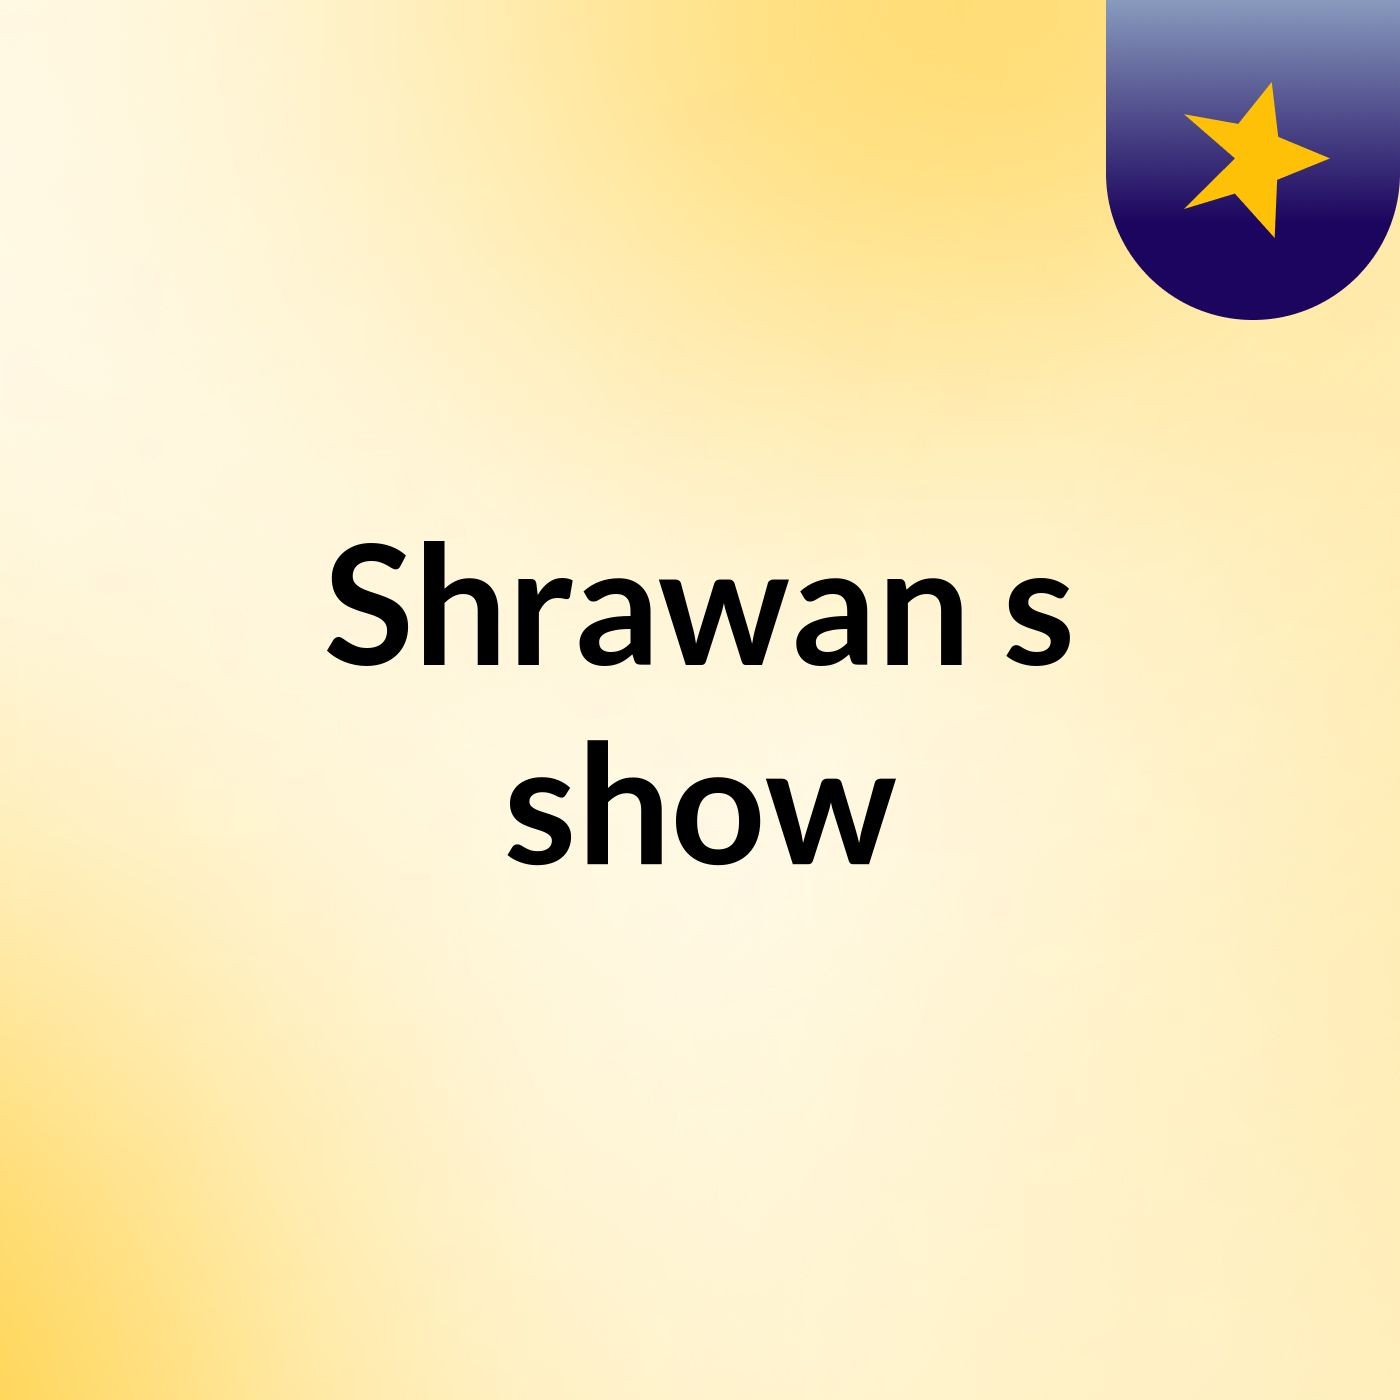 Shrawan's show